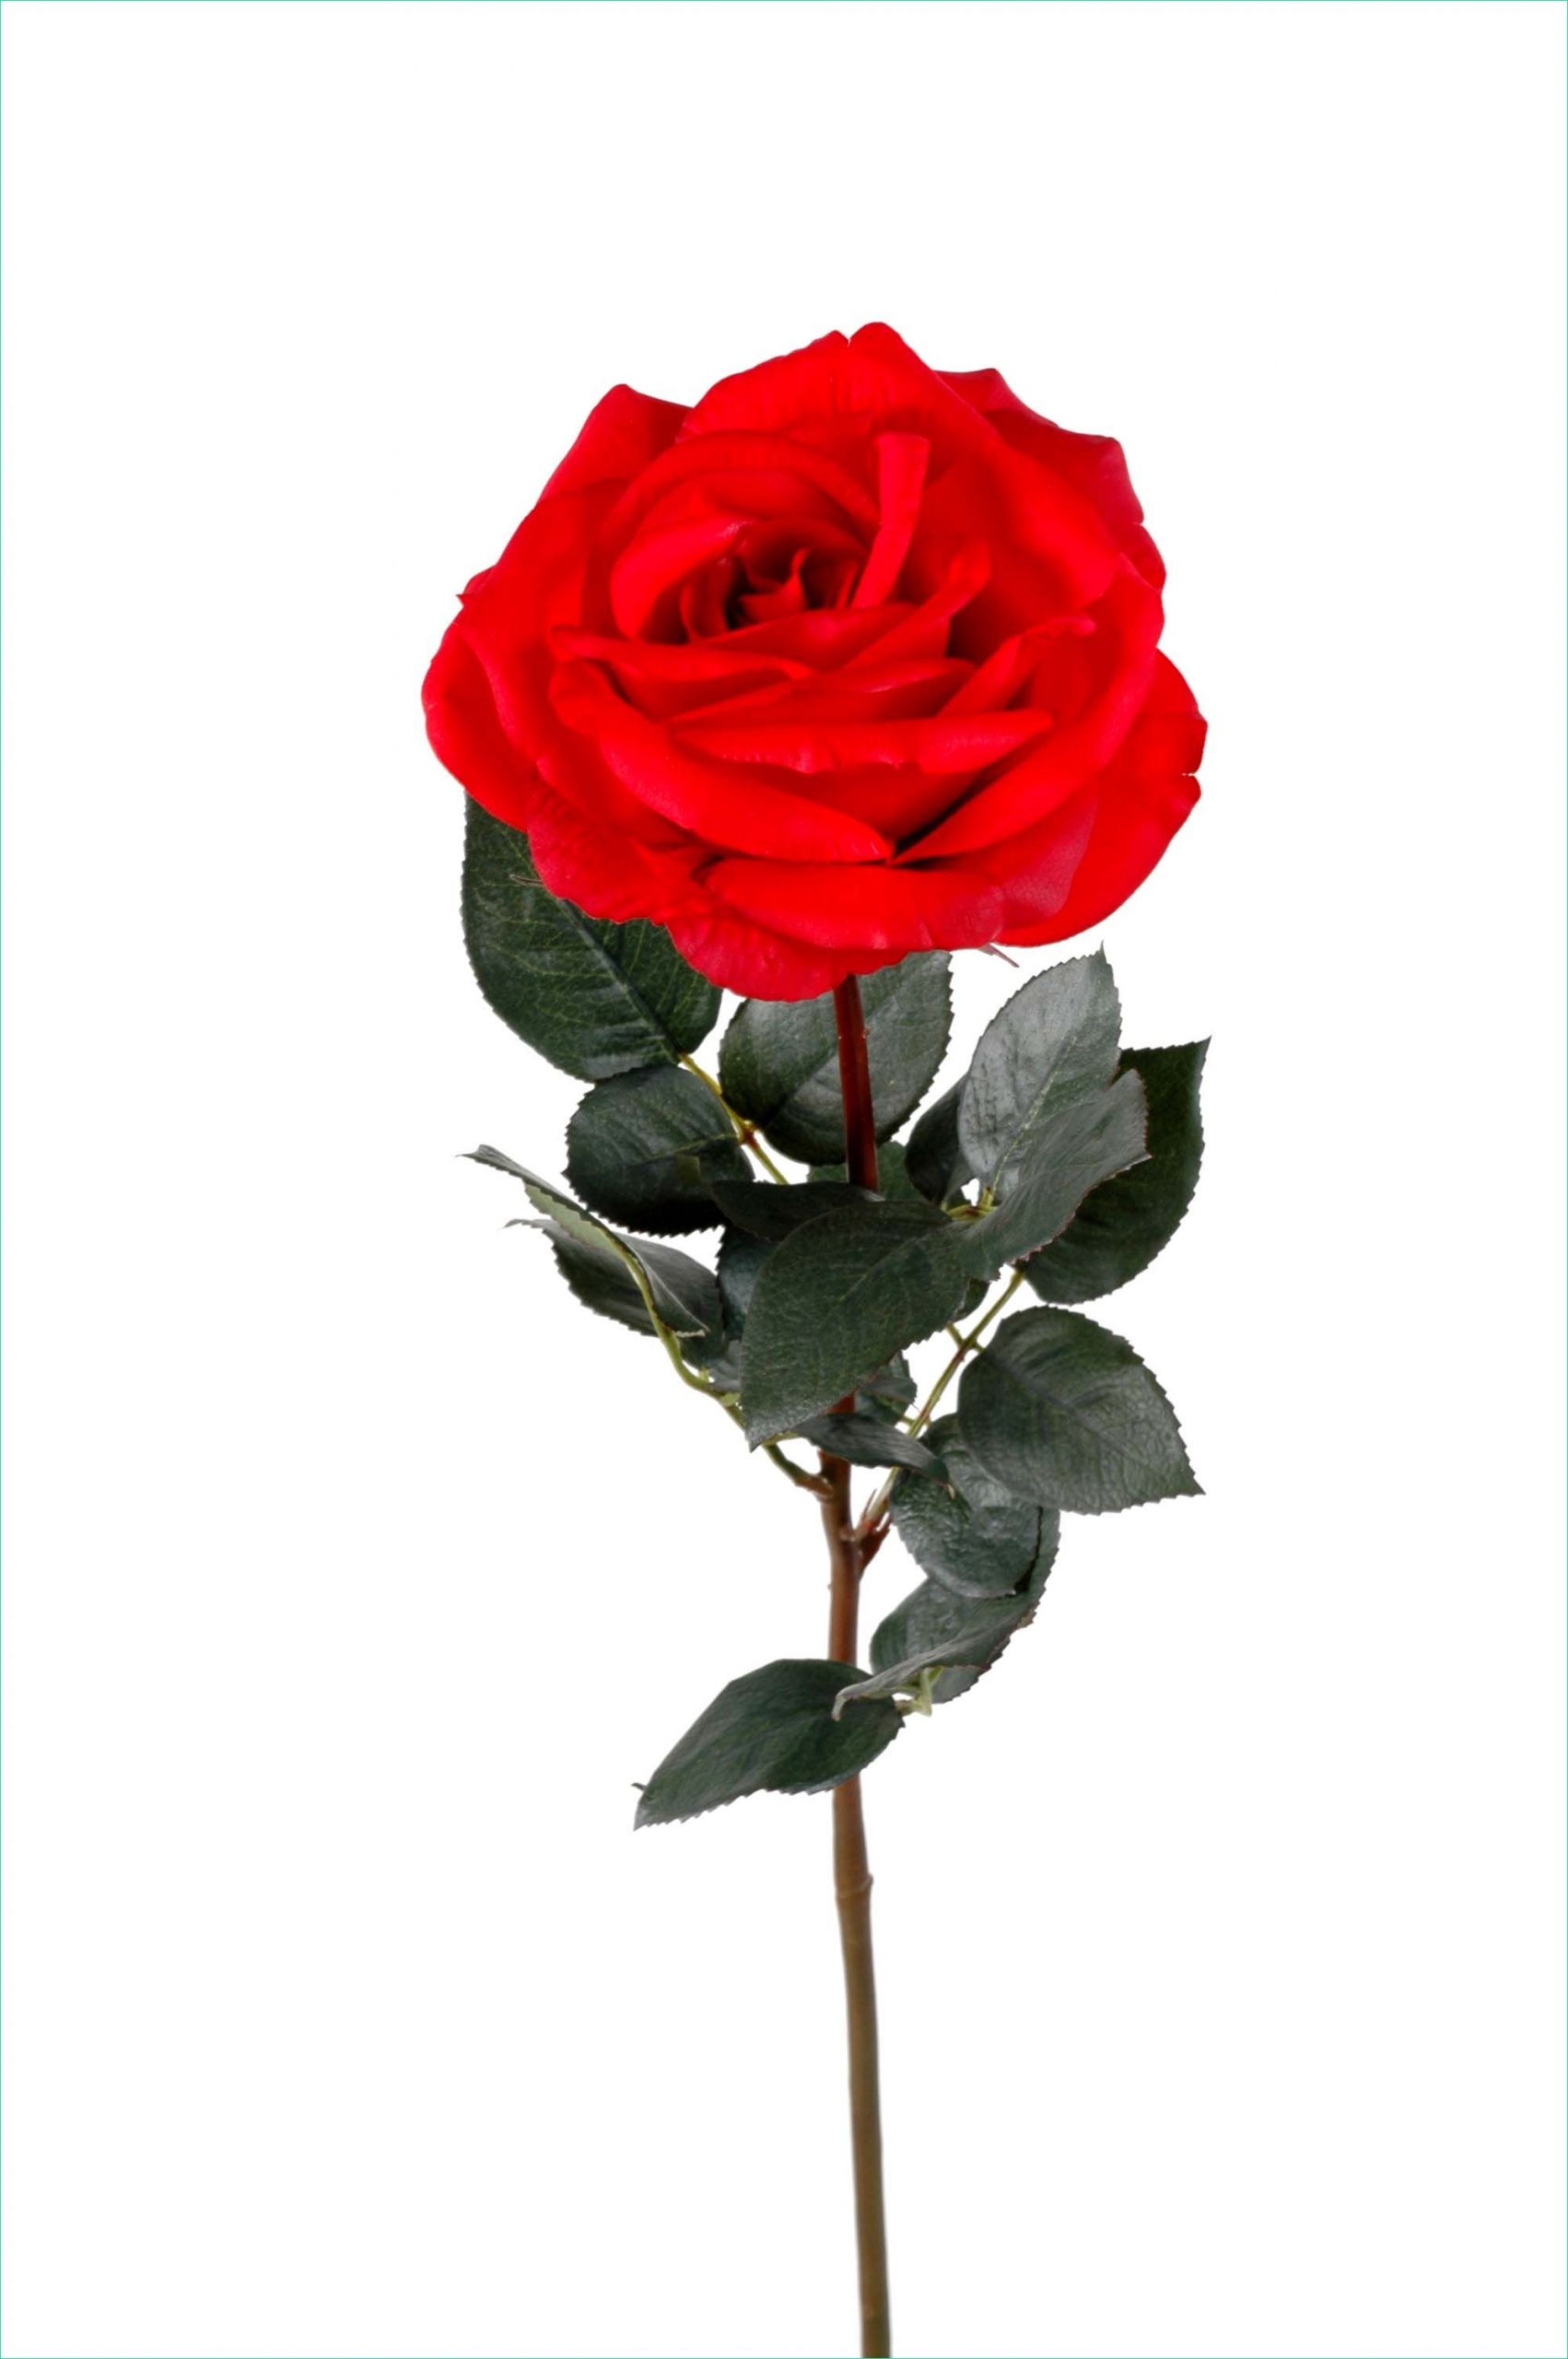 coloriage rose fleur